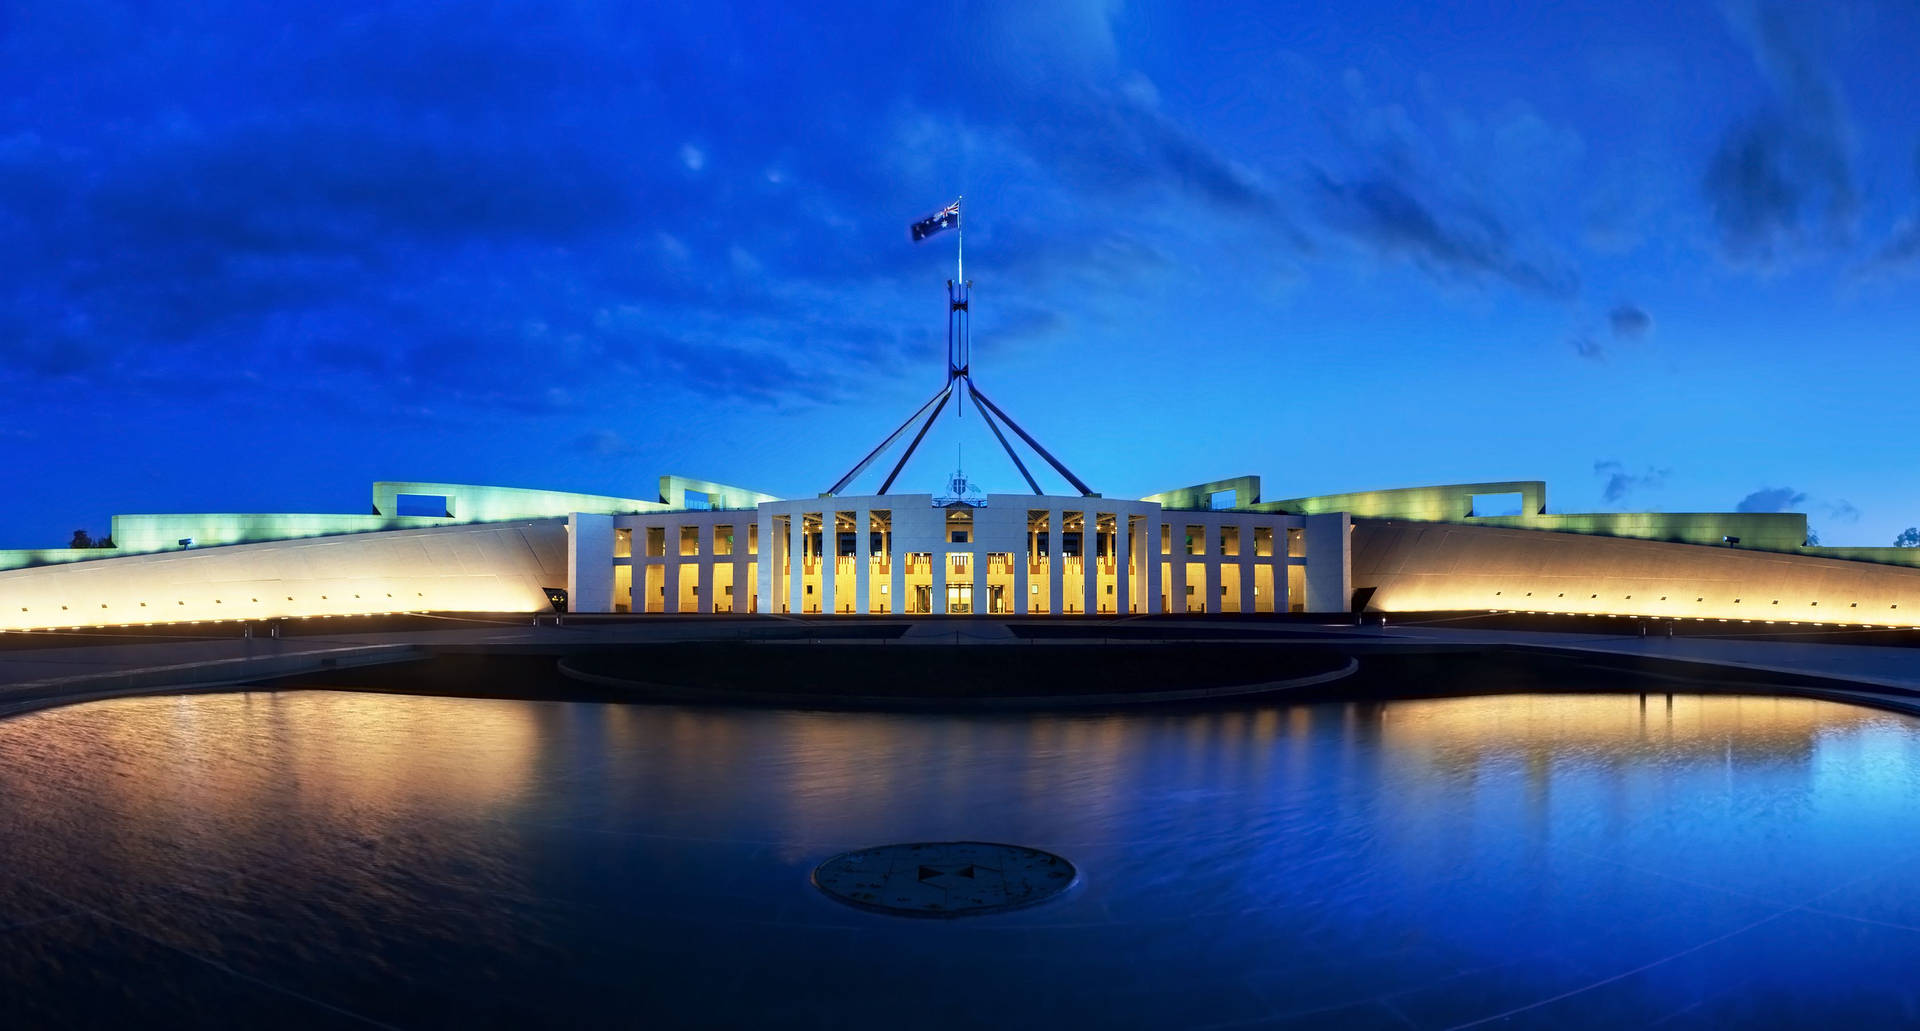 Fondods De Canberra